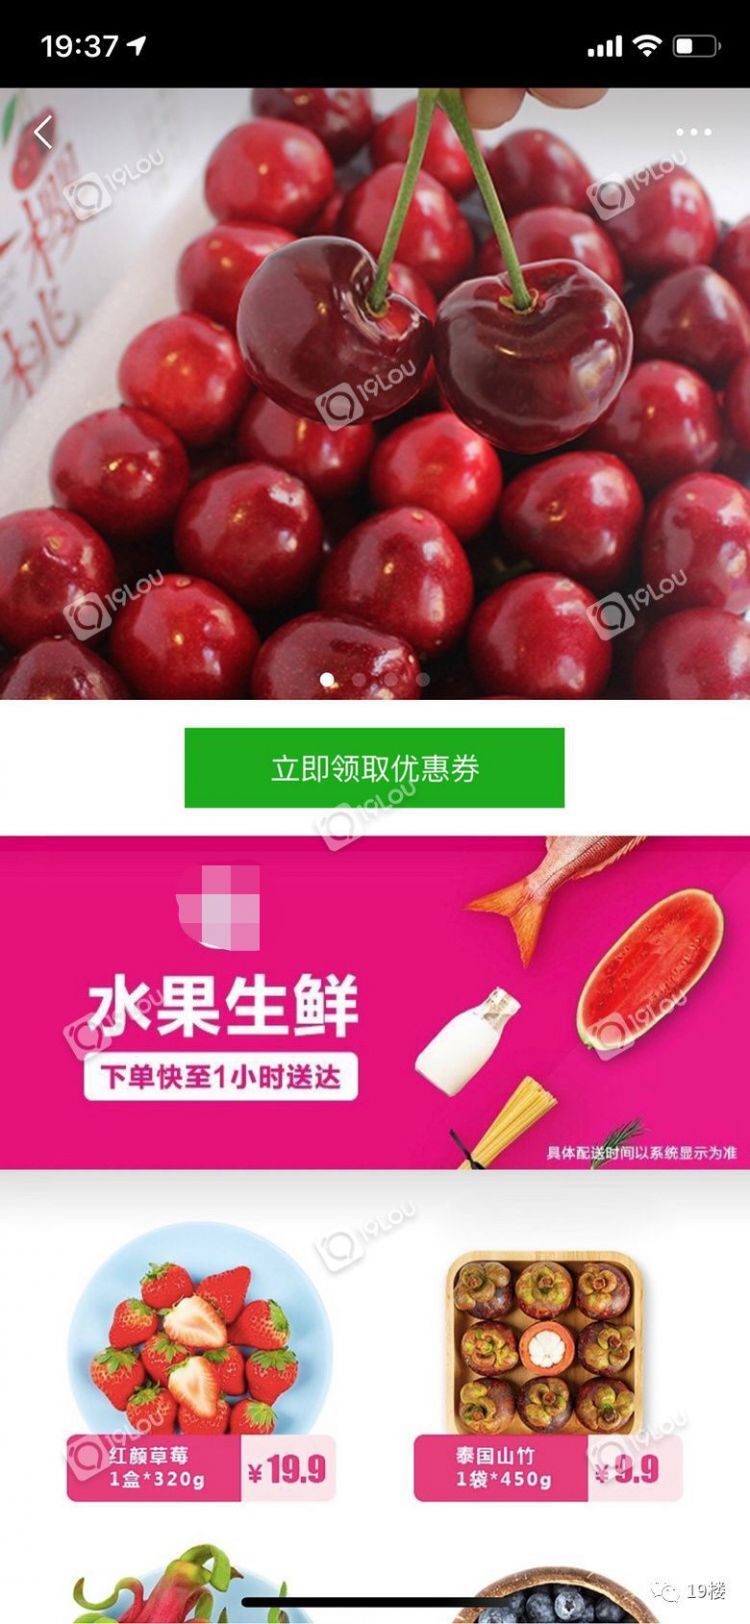 水果1元购居然是个坑？！杭州网友亲历朋友圈广告套路：光草莓就已有17595人参加...